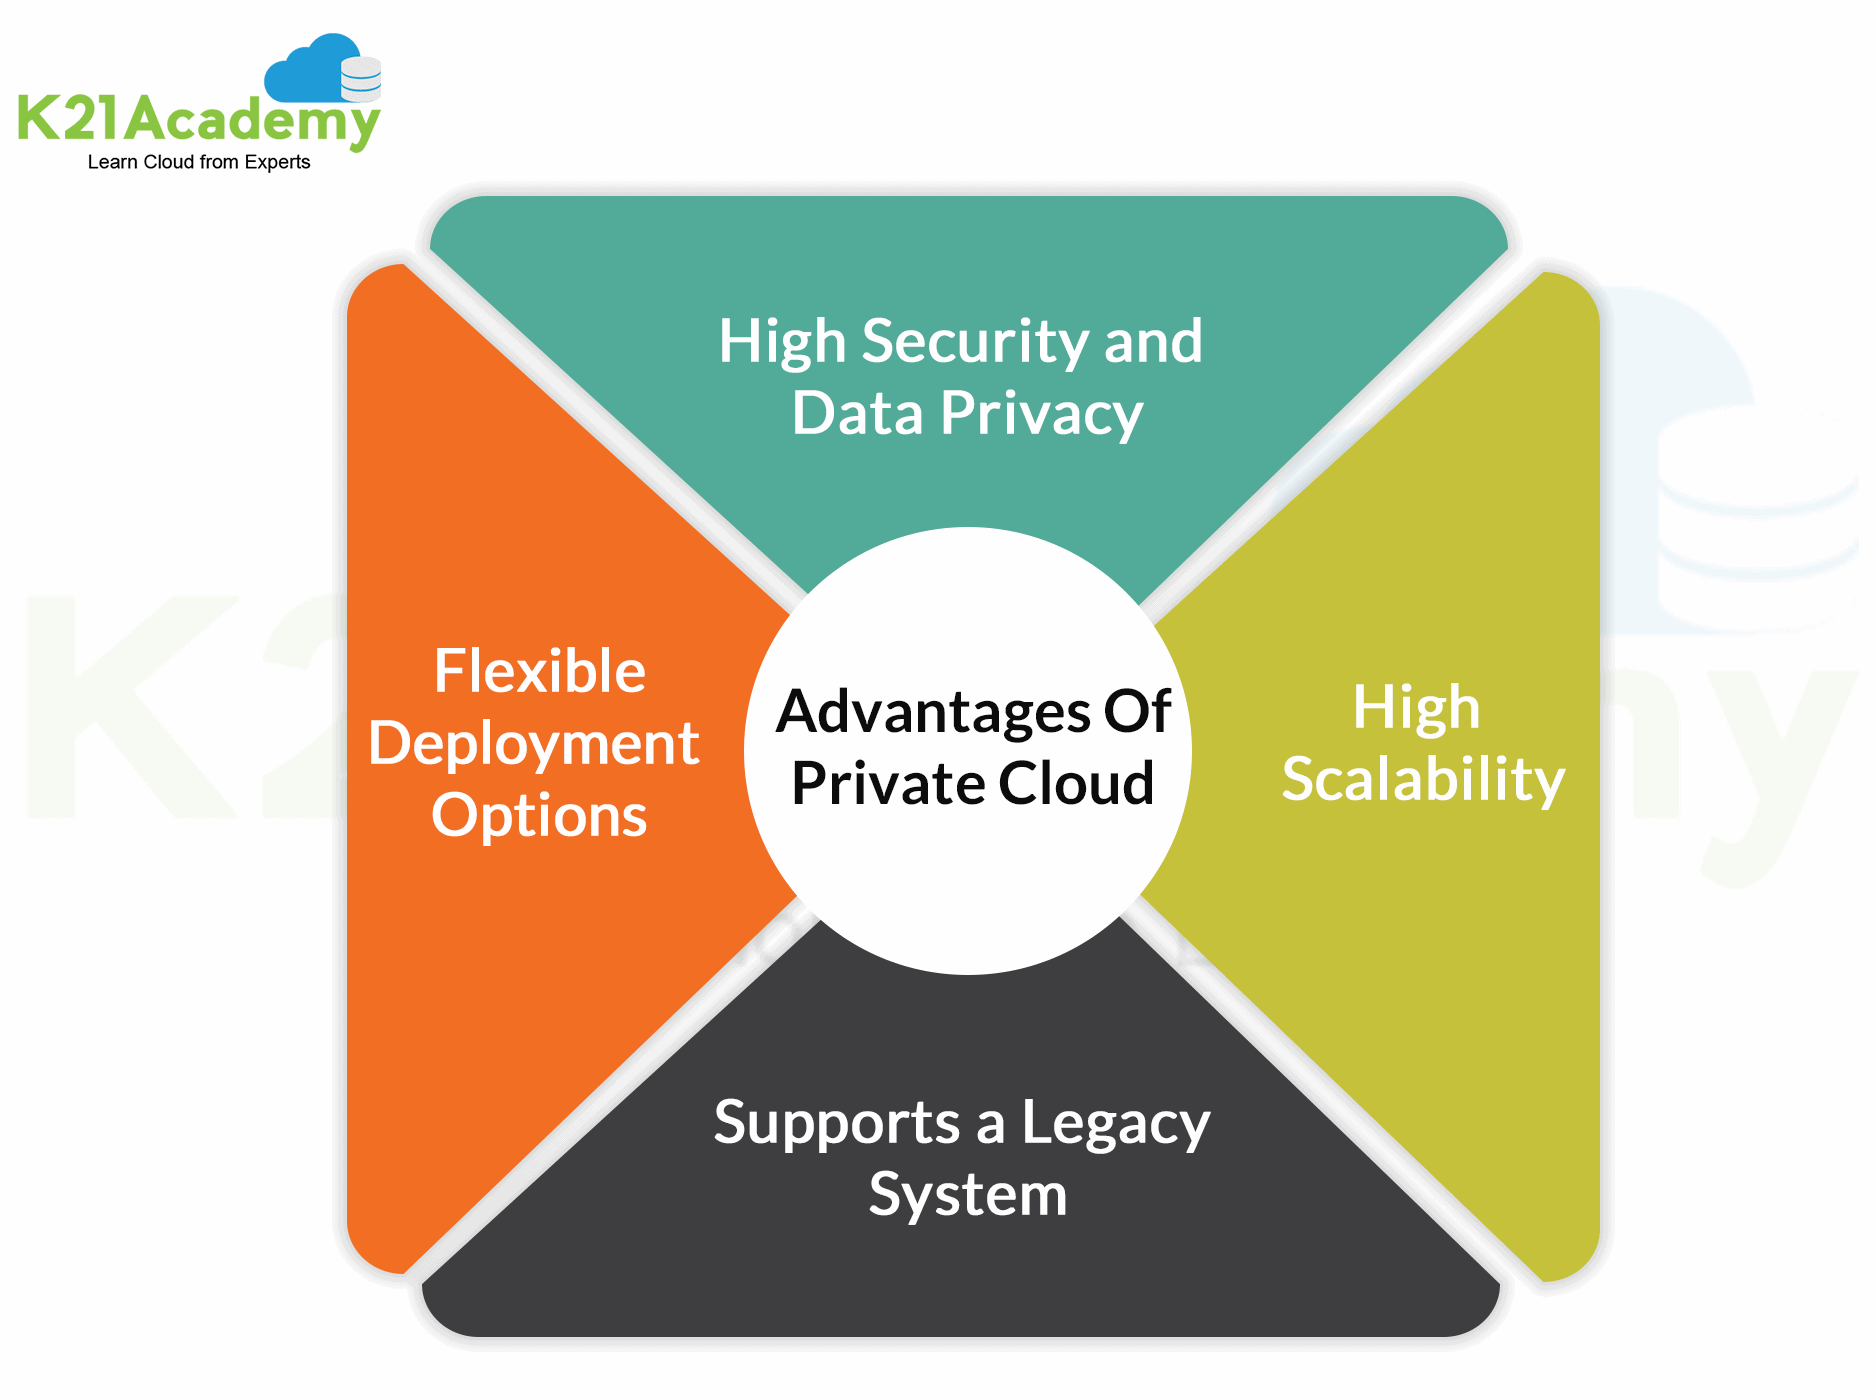 Advantages of Private Cloud